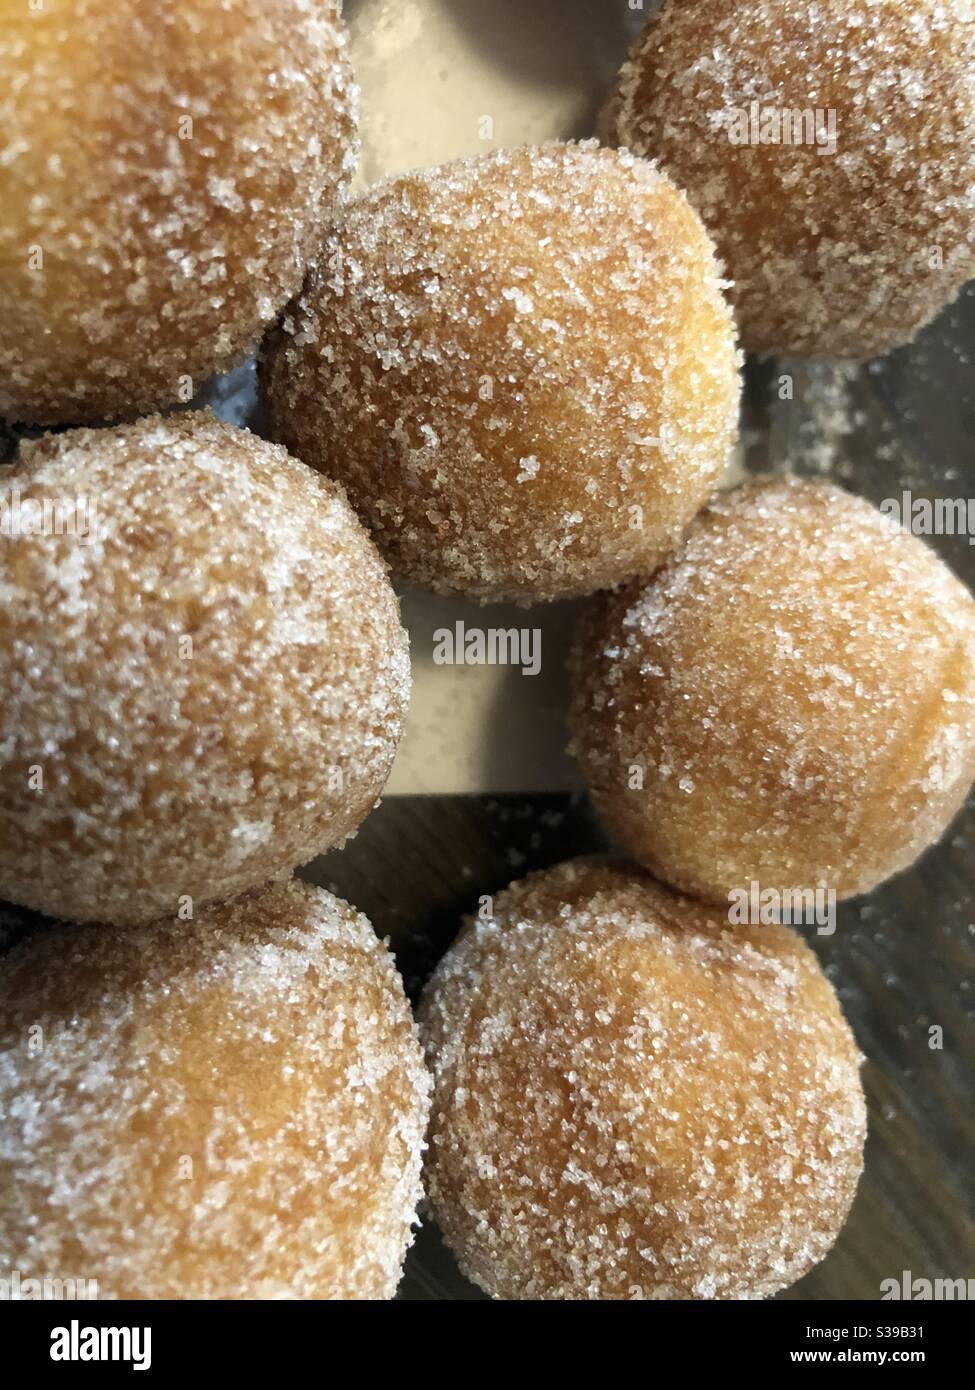 Donut holes. Stock Photo